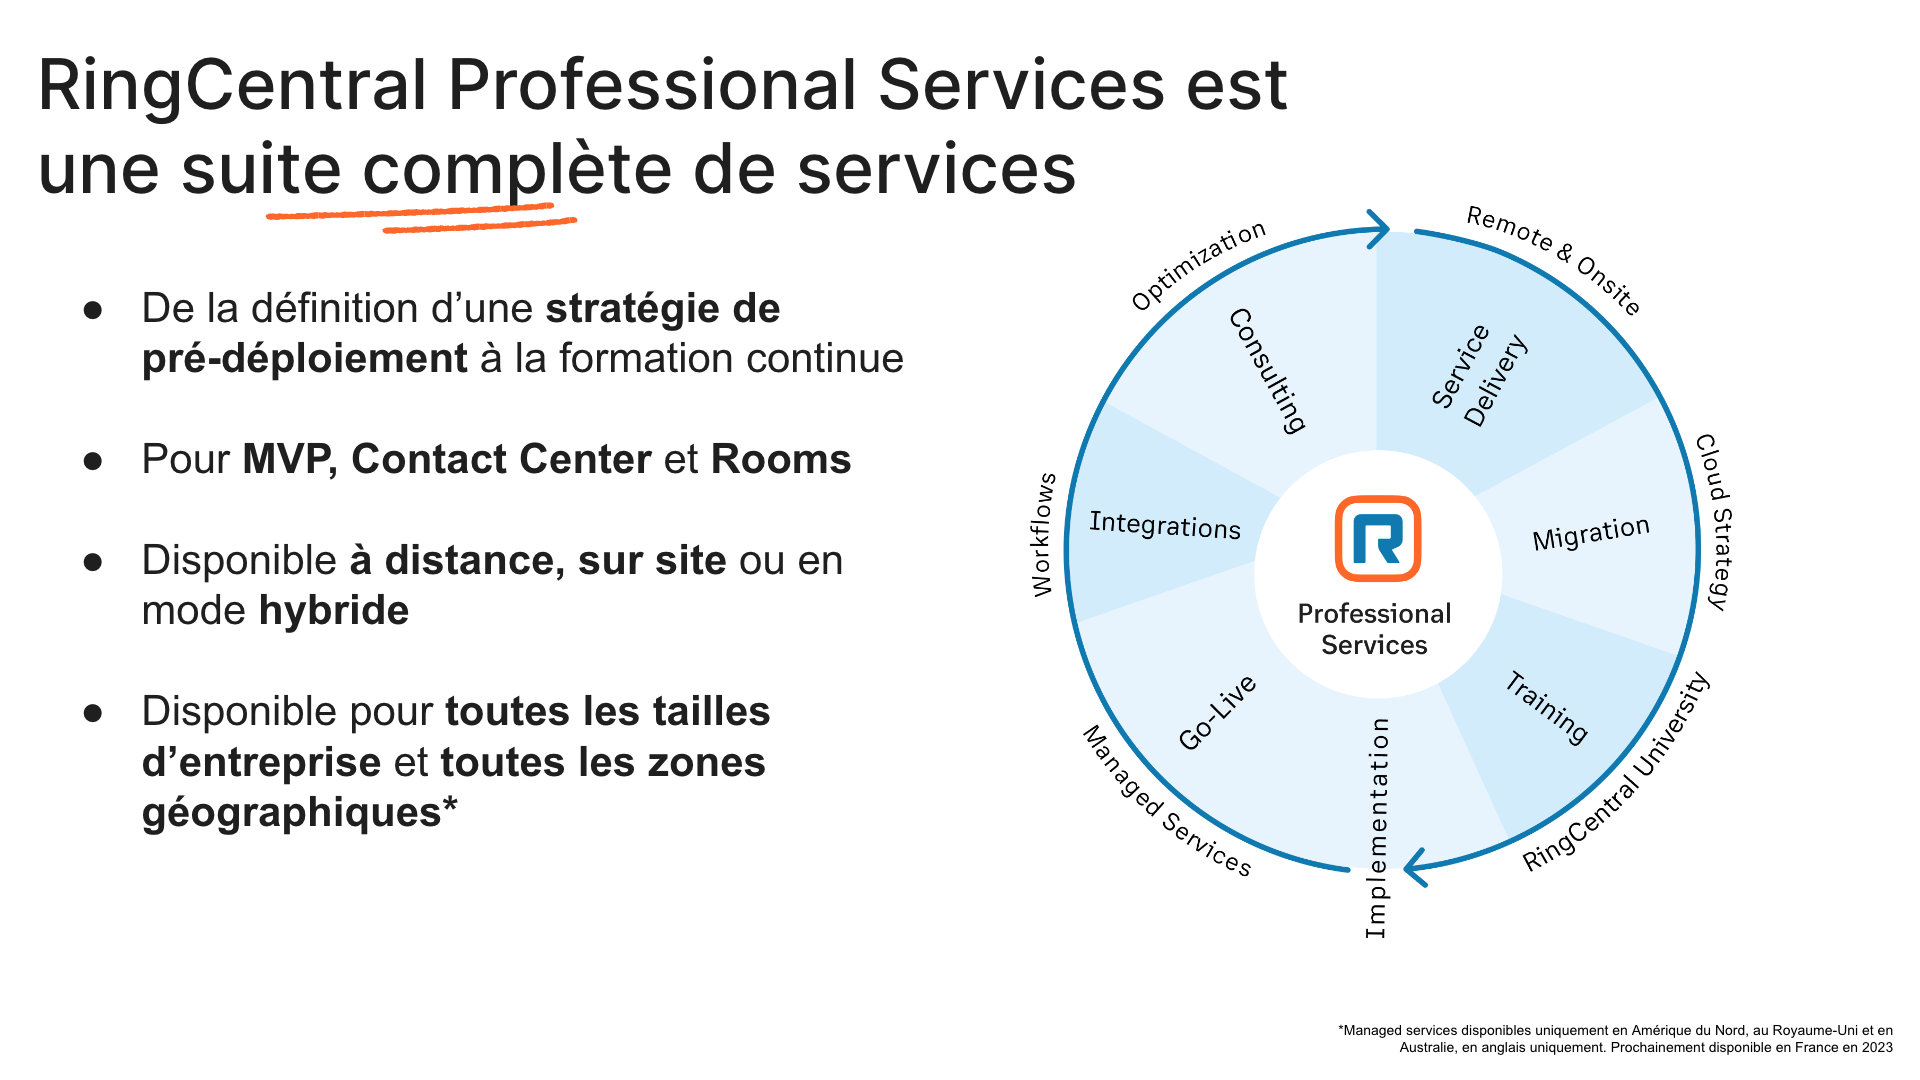 Présentation de l'offre complète de RingCentral Professional Services